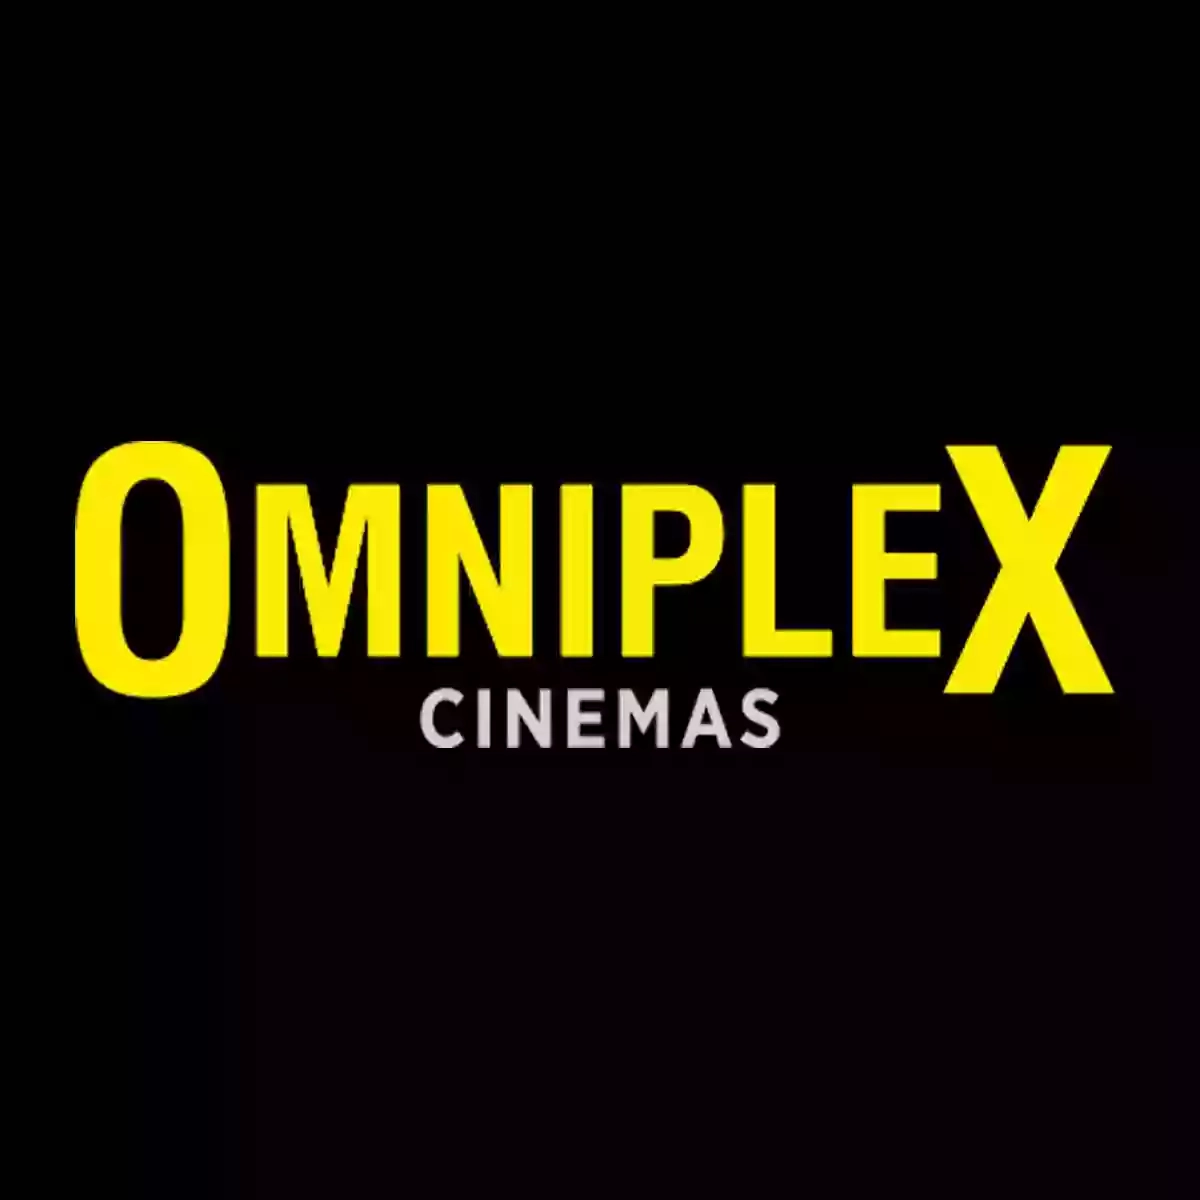 Omniplex Cinema Newry